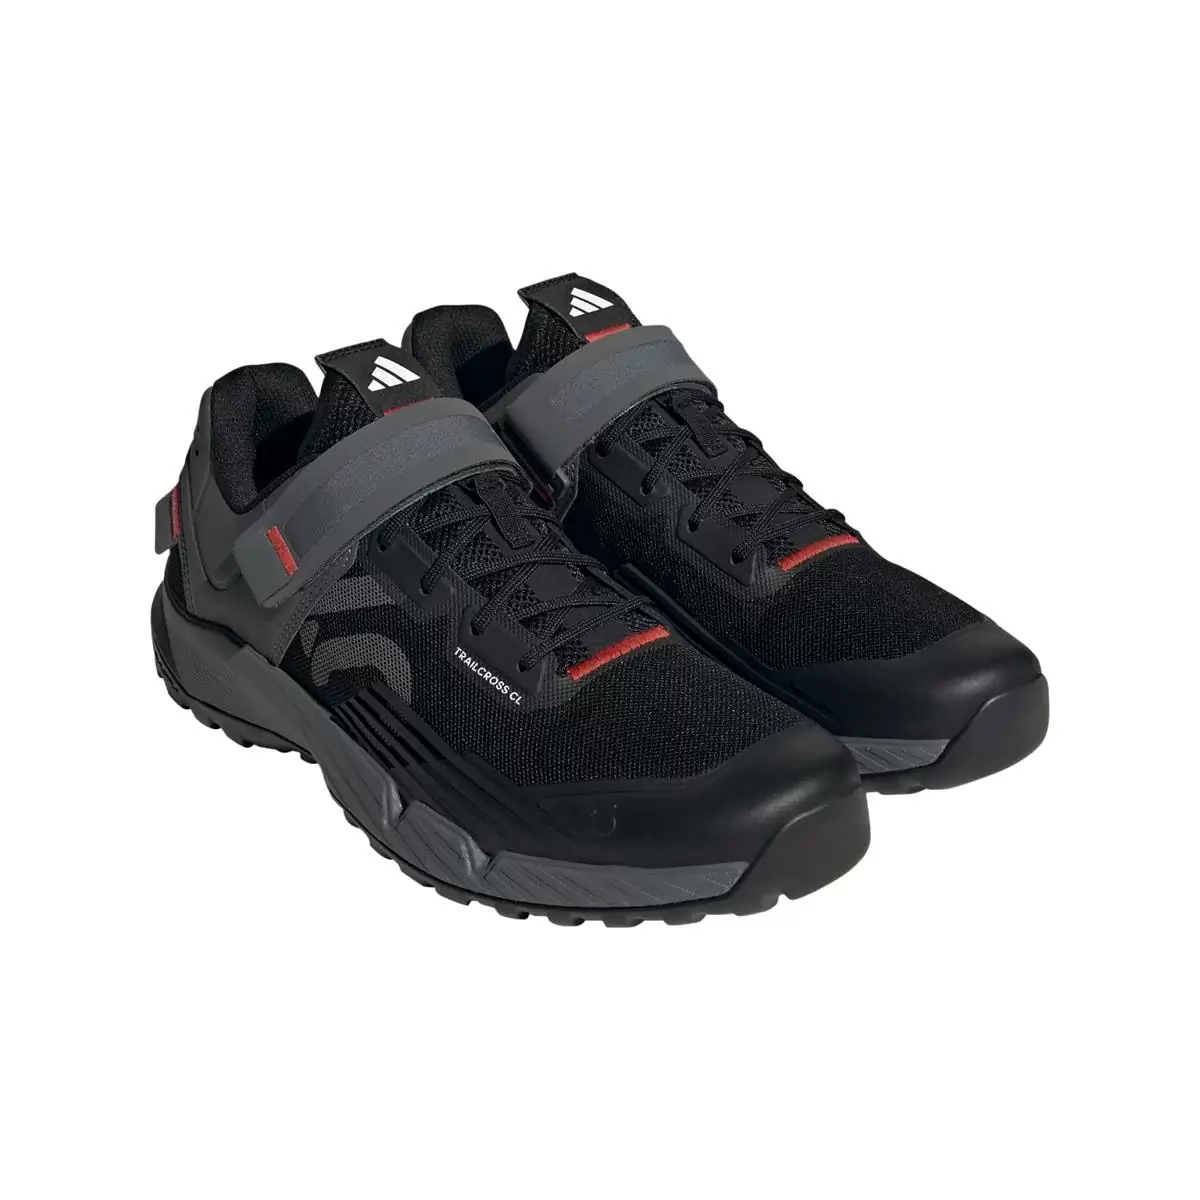 Clip 5.10 Trailcross MTB Shoes Black/Grey Size 45 #1